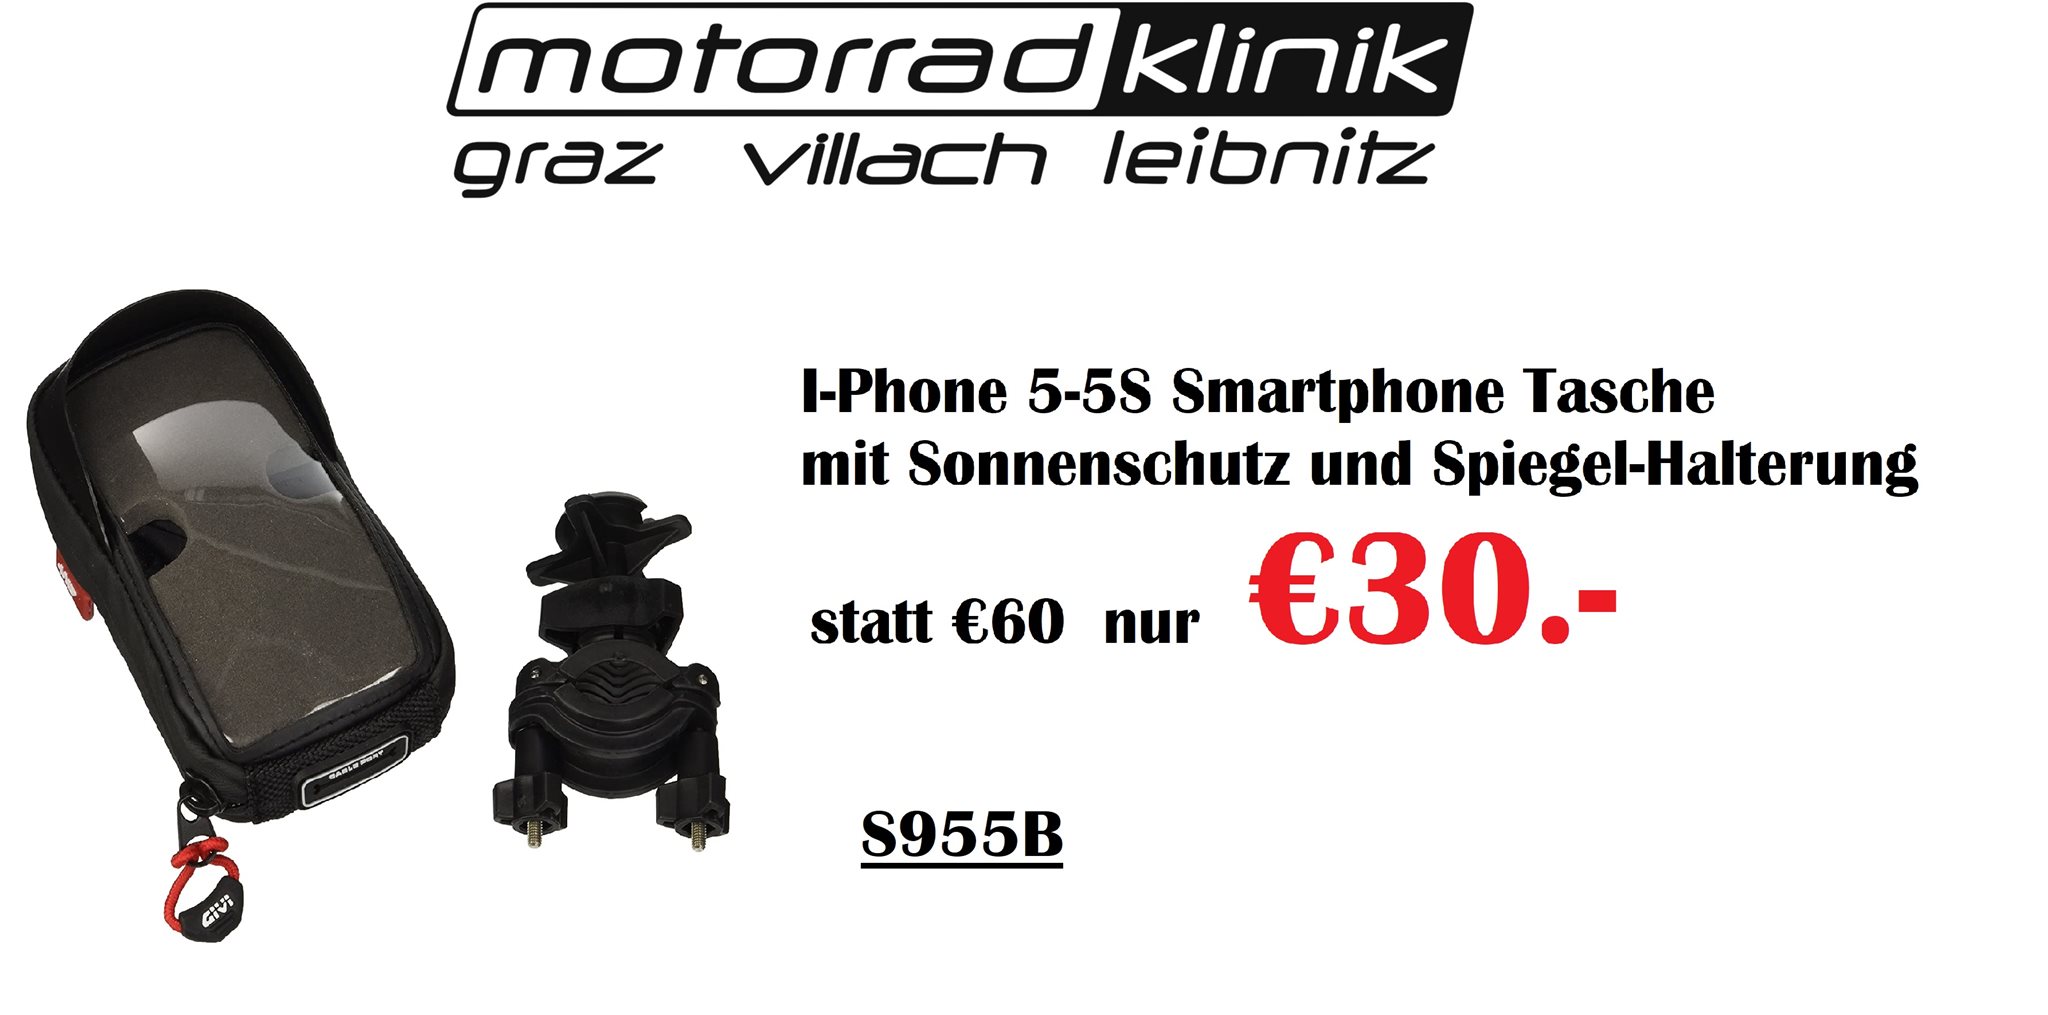 I-Phone 5-5S Smartphone Tasche mit Sonnenschutz mit Spiegel-Halterung  (genaueres siehe Beschreibung) statt €60 nur €30.- statt 60,00 EUR jetzt  nur 30,00 EUR - 1000PS Shop - Sale